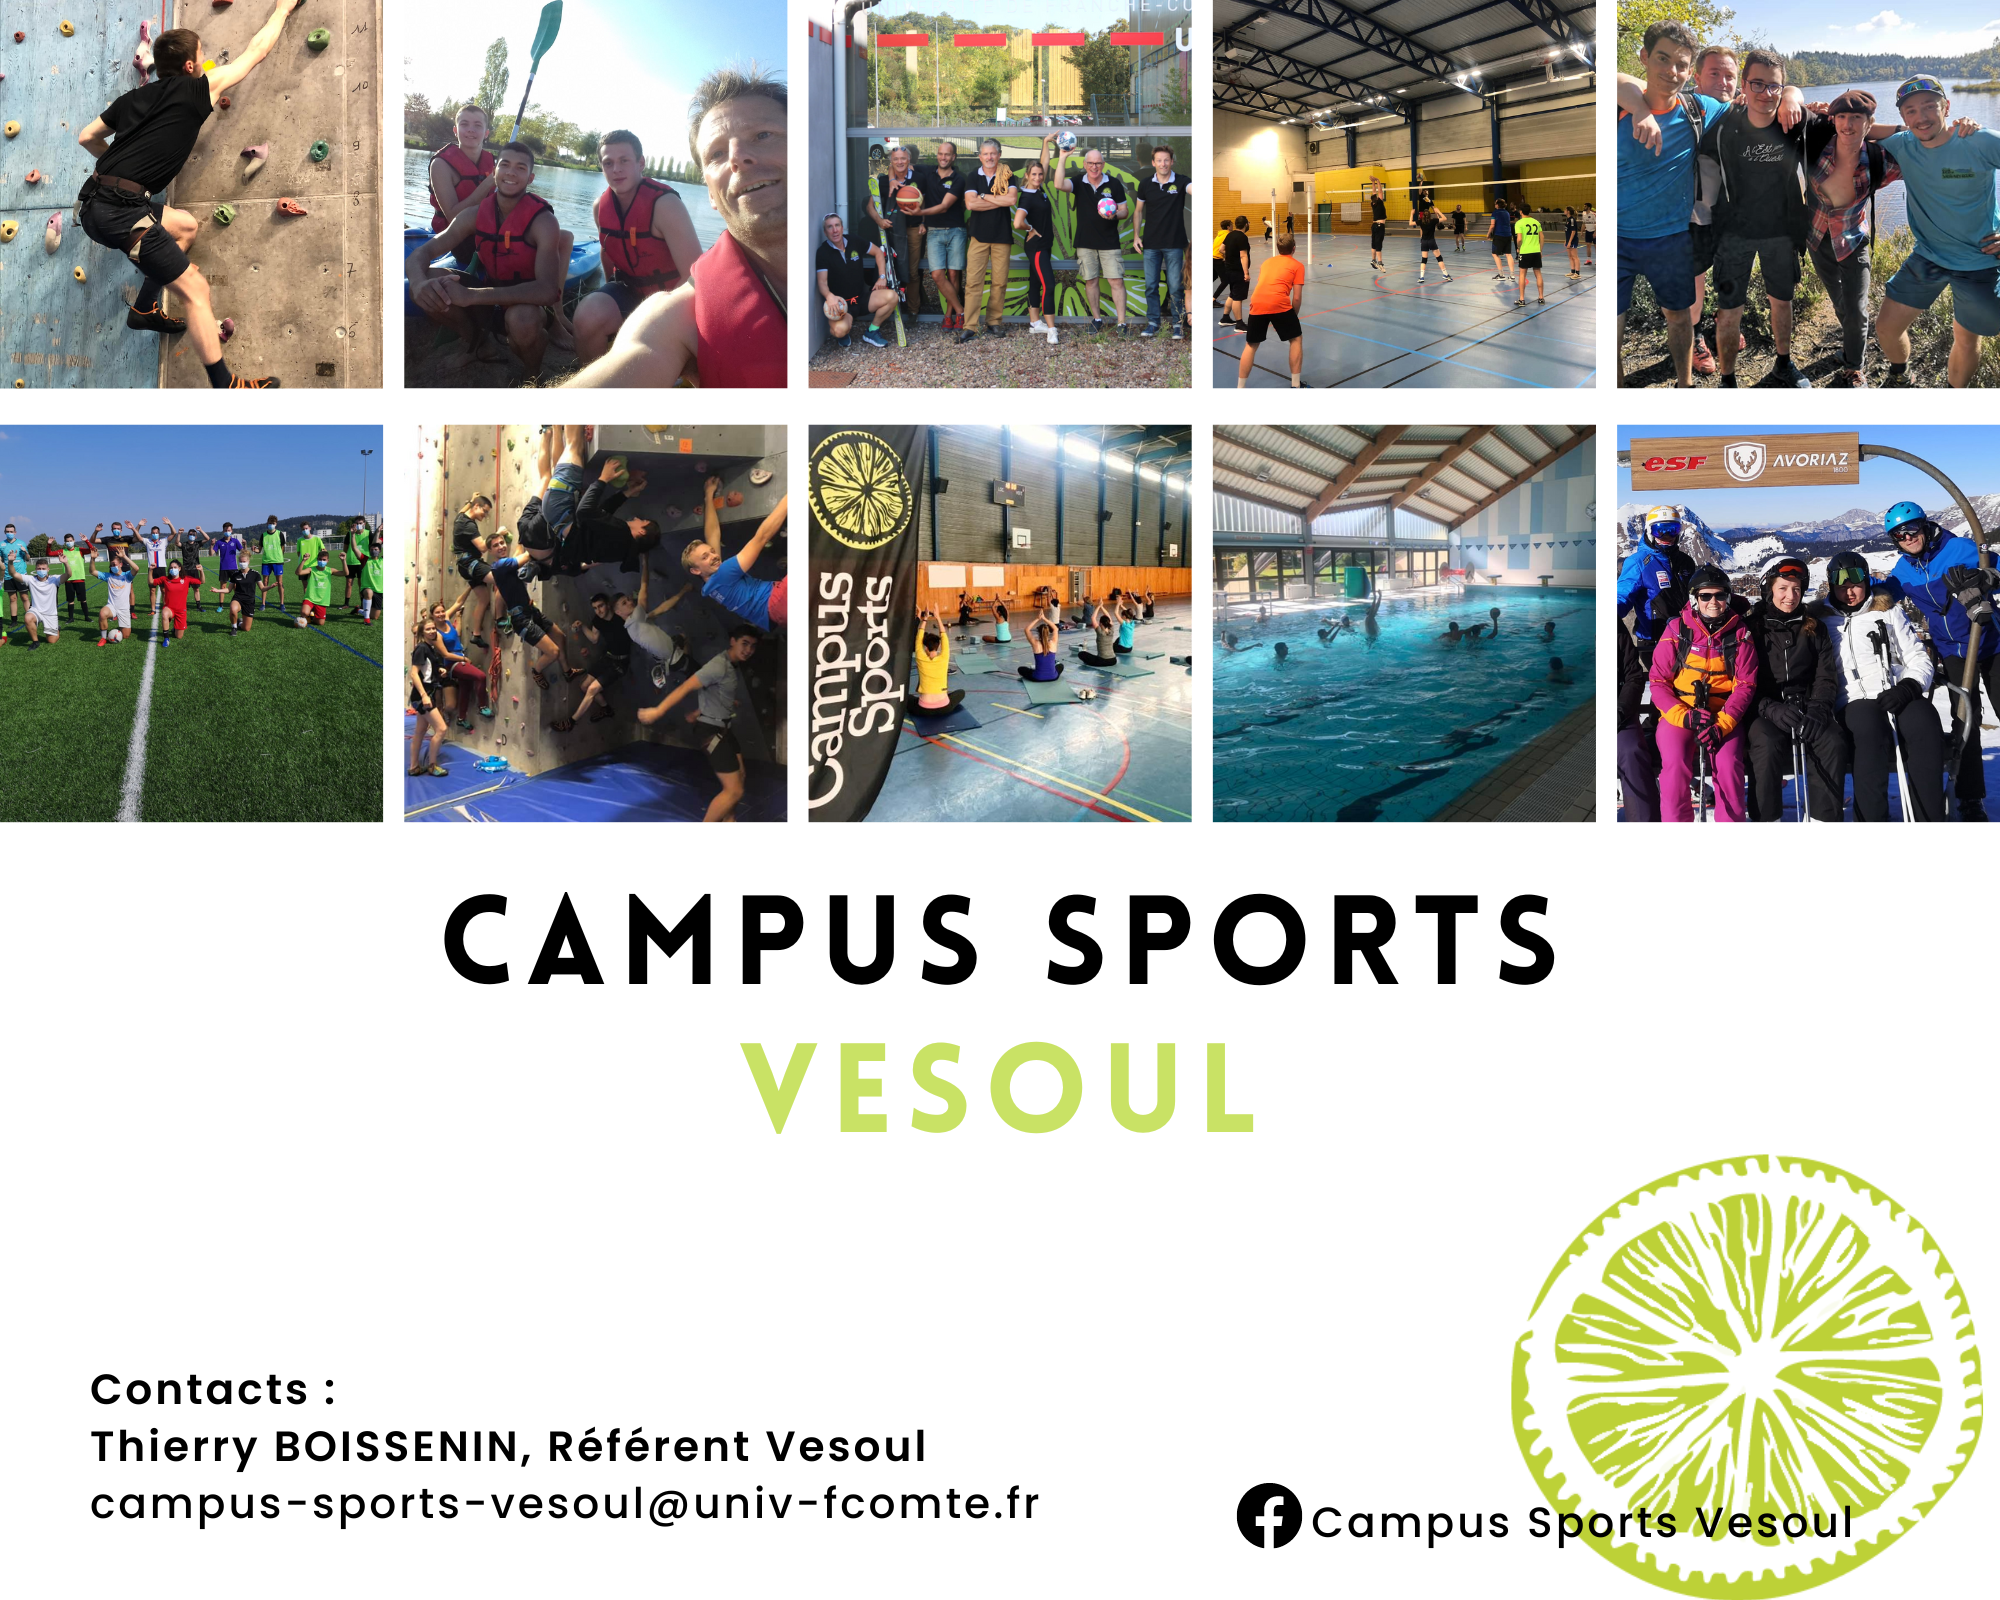 Campus Sports Vesoul